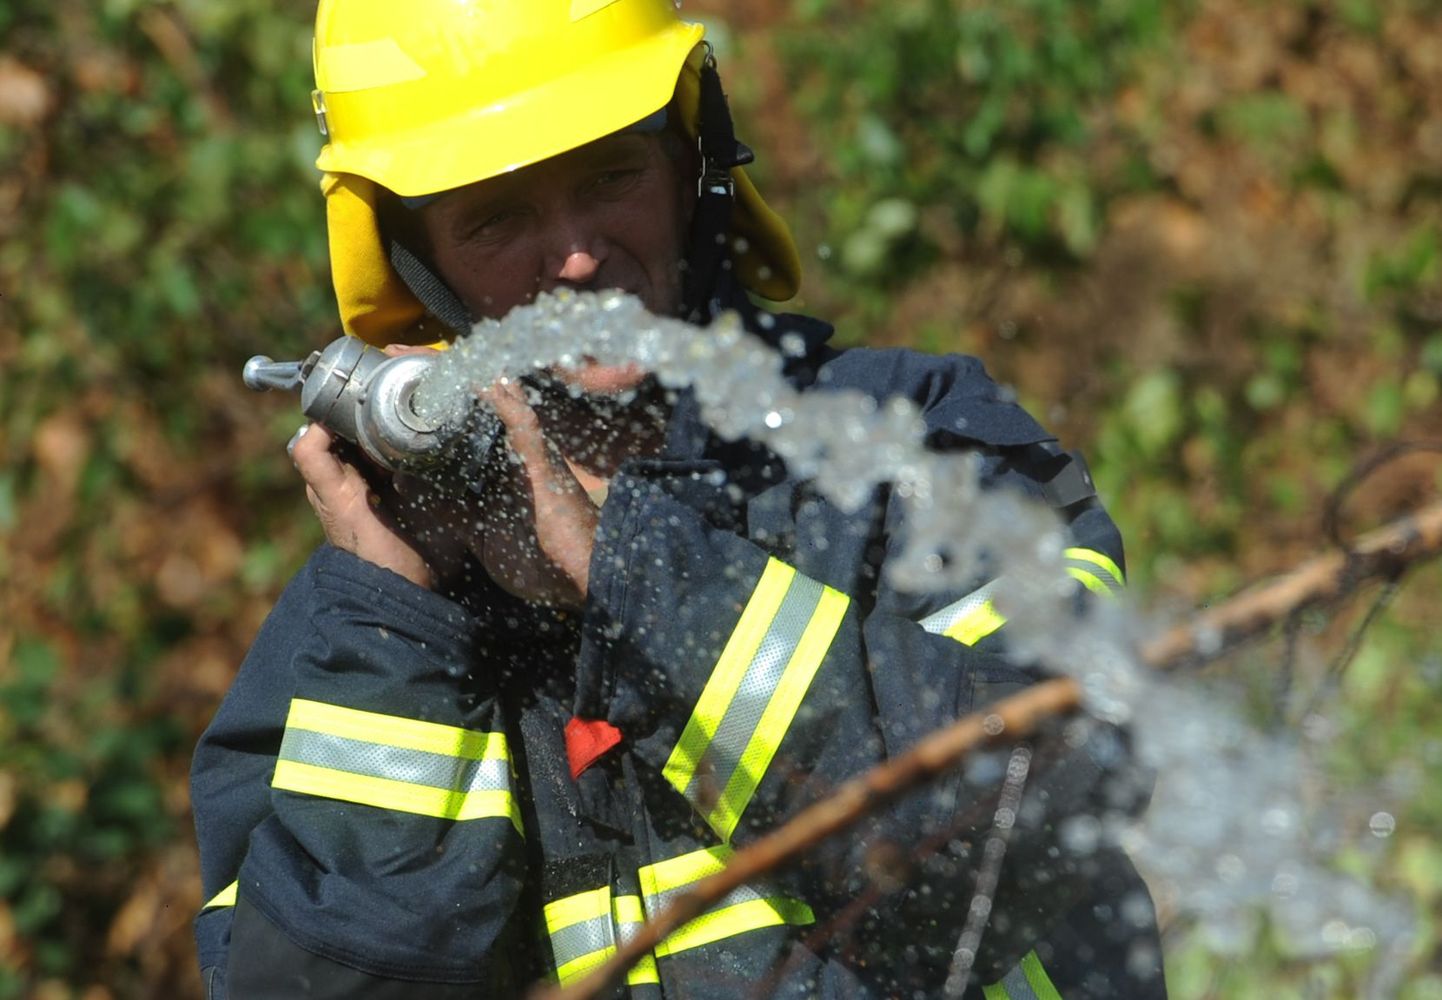 Vene tuletõrjuja põlengut kustutamas